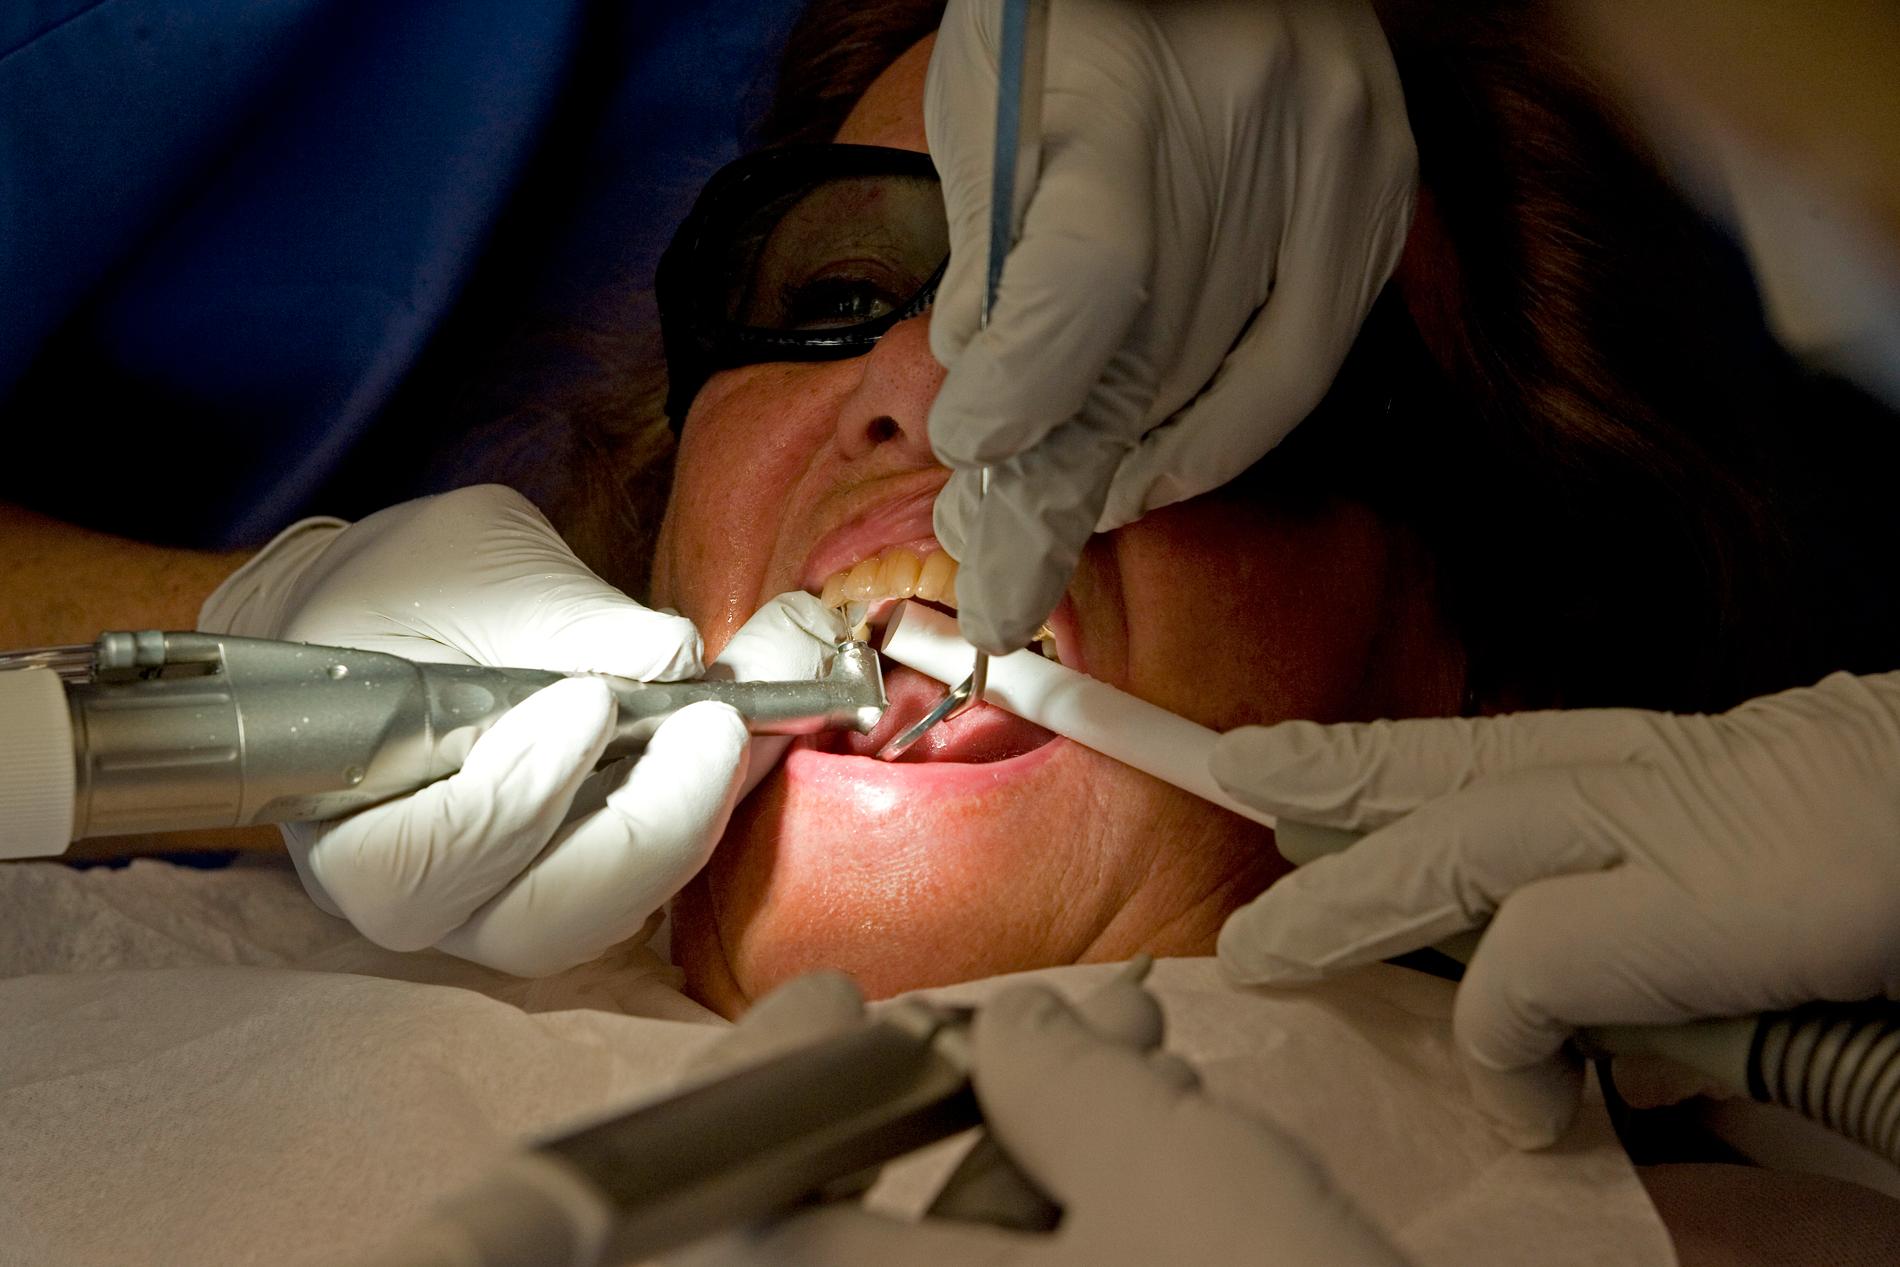 Varken tandläkare eller patient på bilden har något med nedanstående notis att göra.